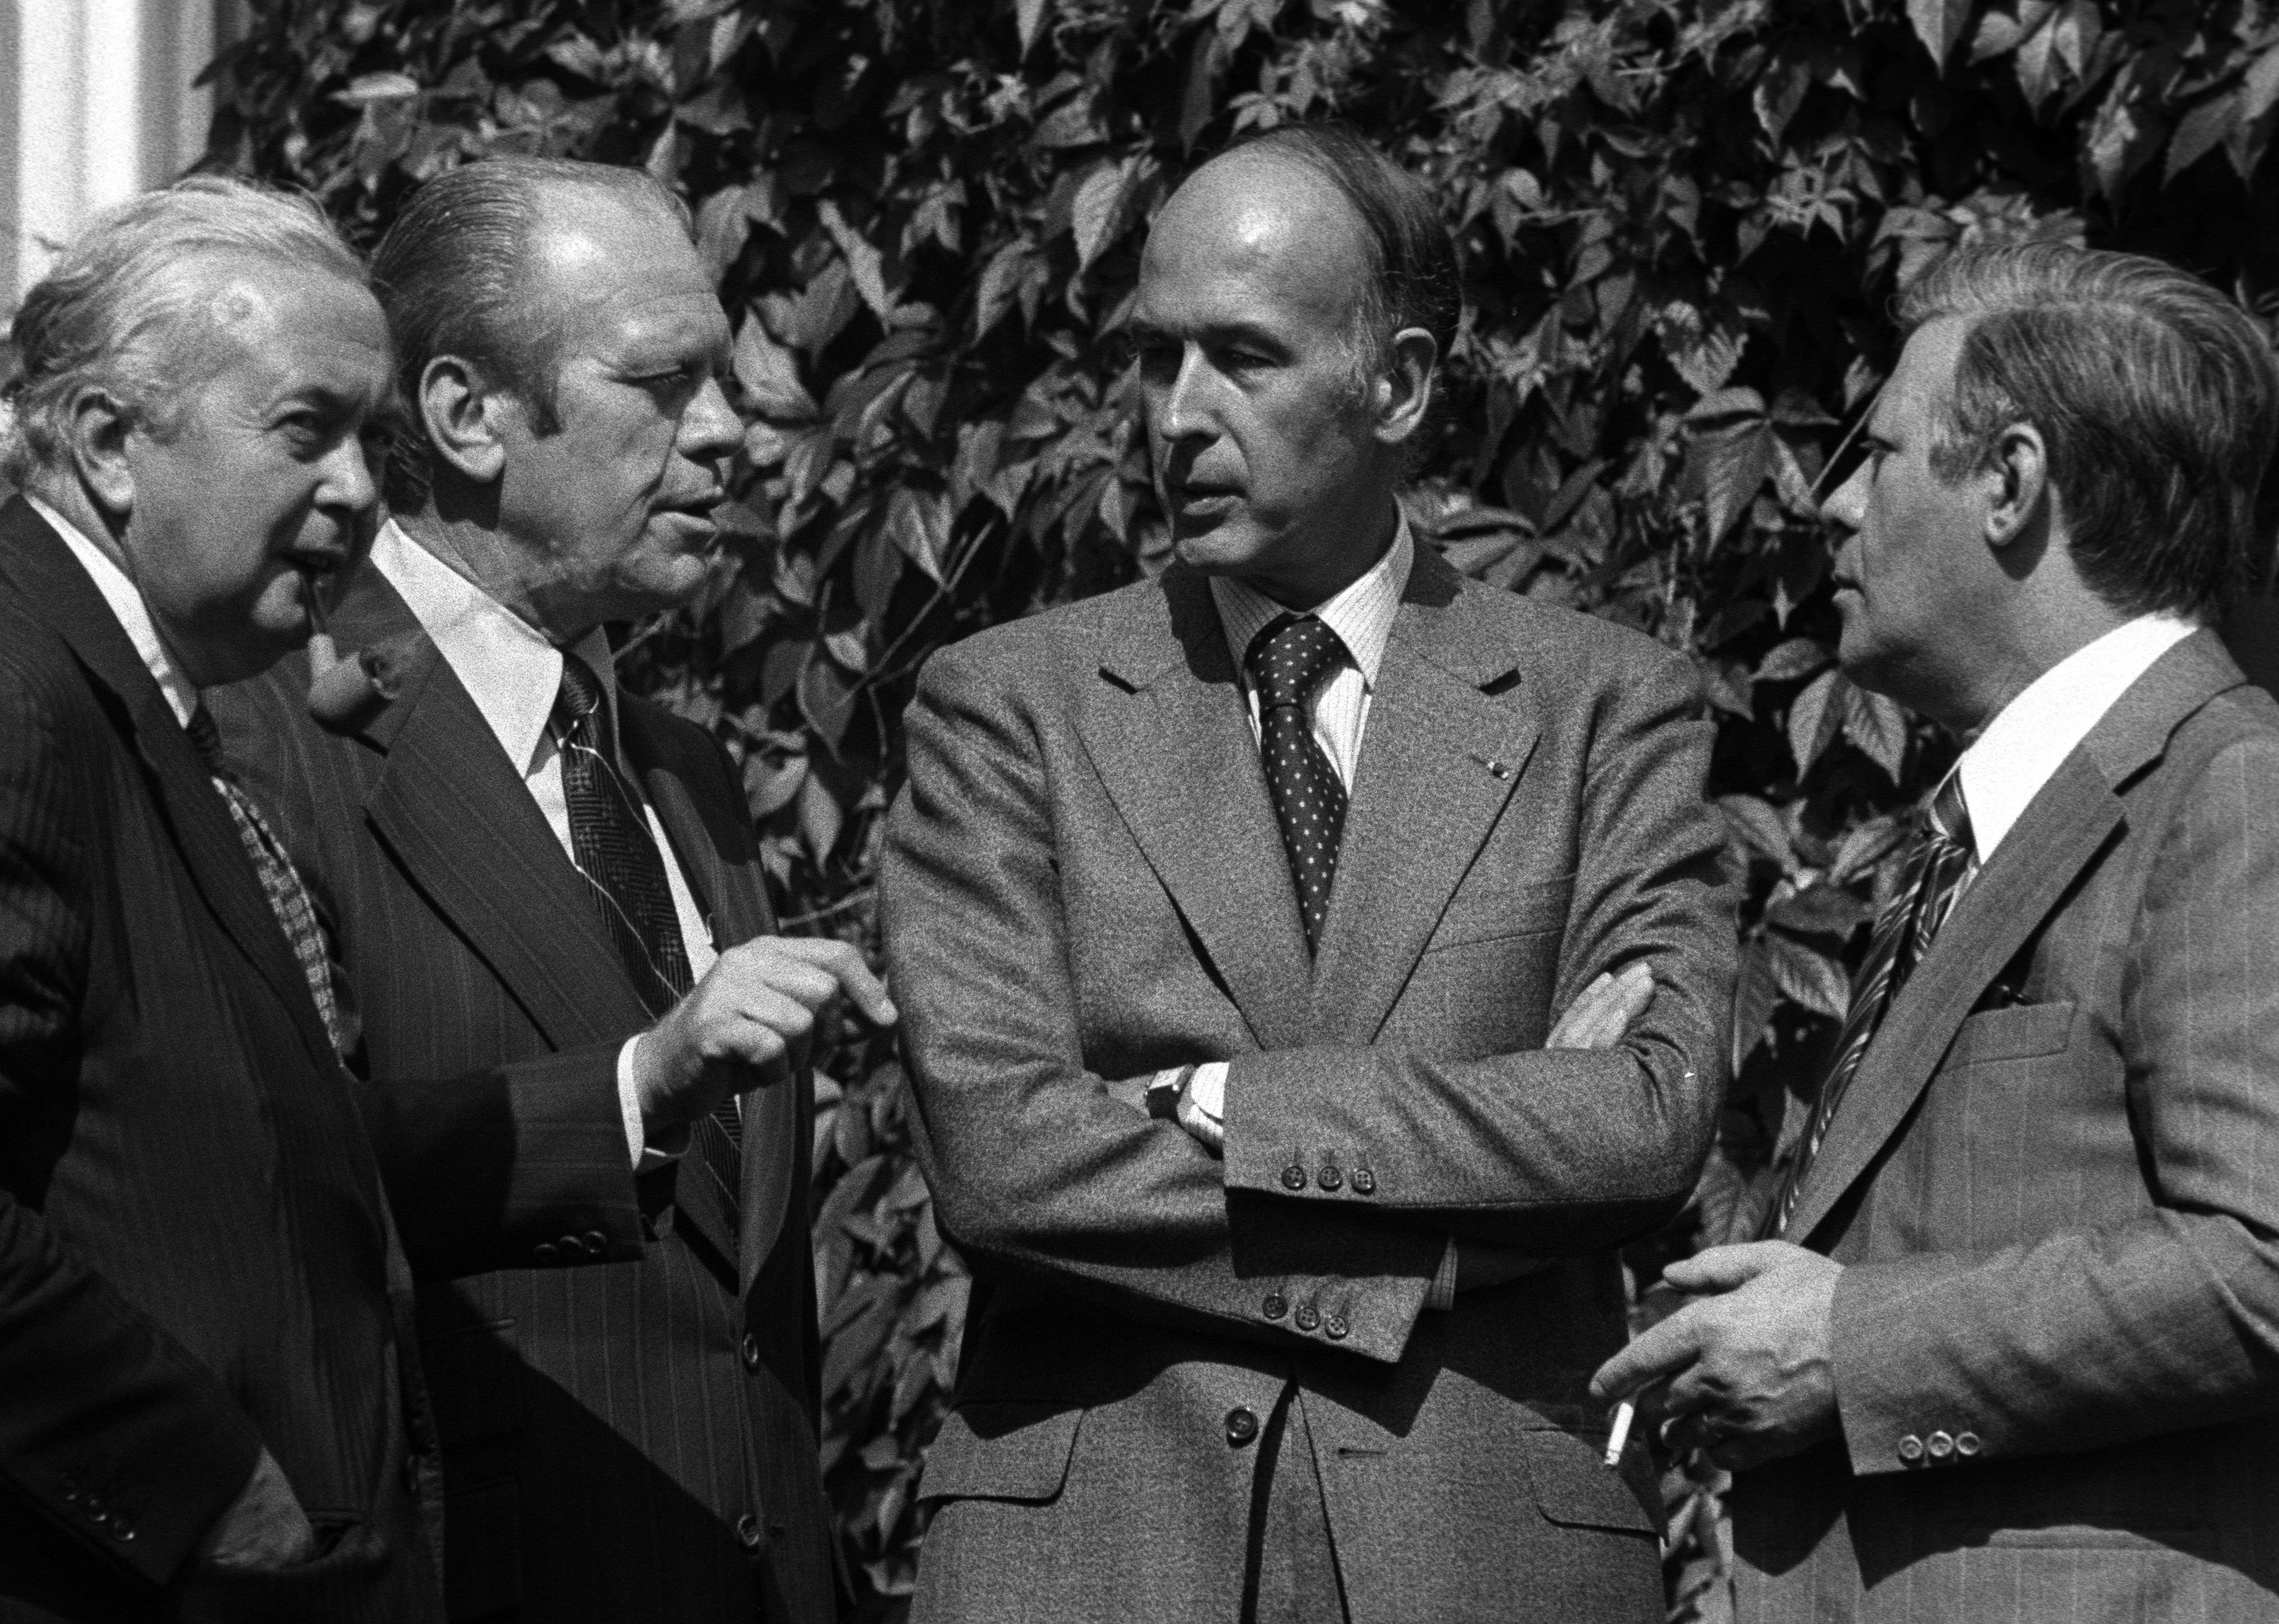 Gruppenaufnahme mit Premierminister von Großbritannien Harold Wilson, Präsident der USA Gerald Ford, Premierminister von Frankreich Giscard d'Estaing und Bundeskanzler Helmut Schmidt